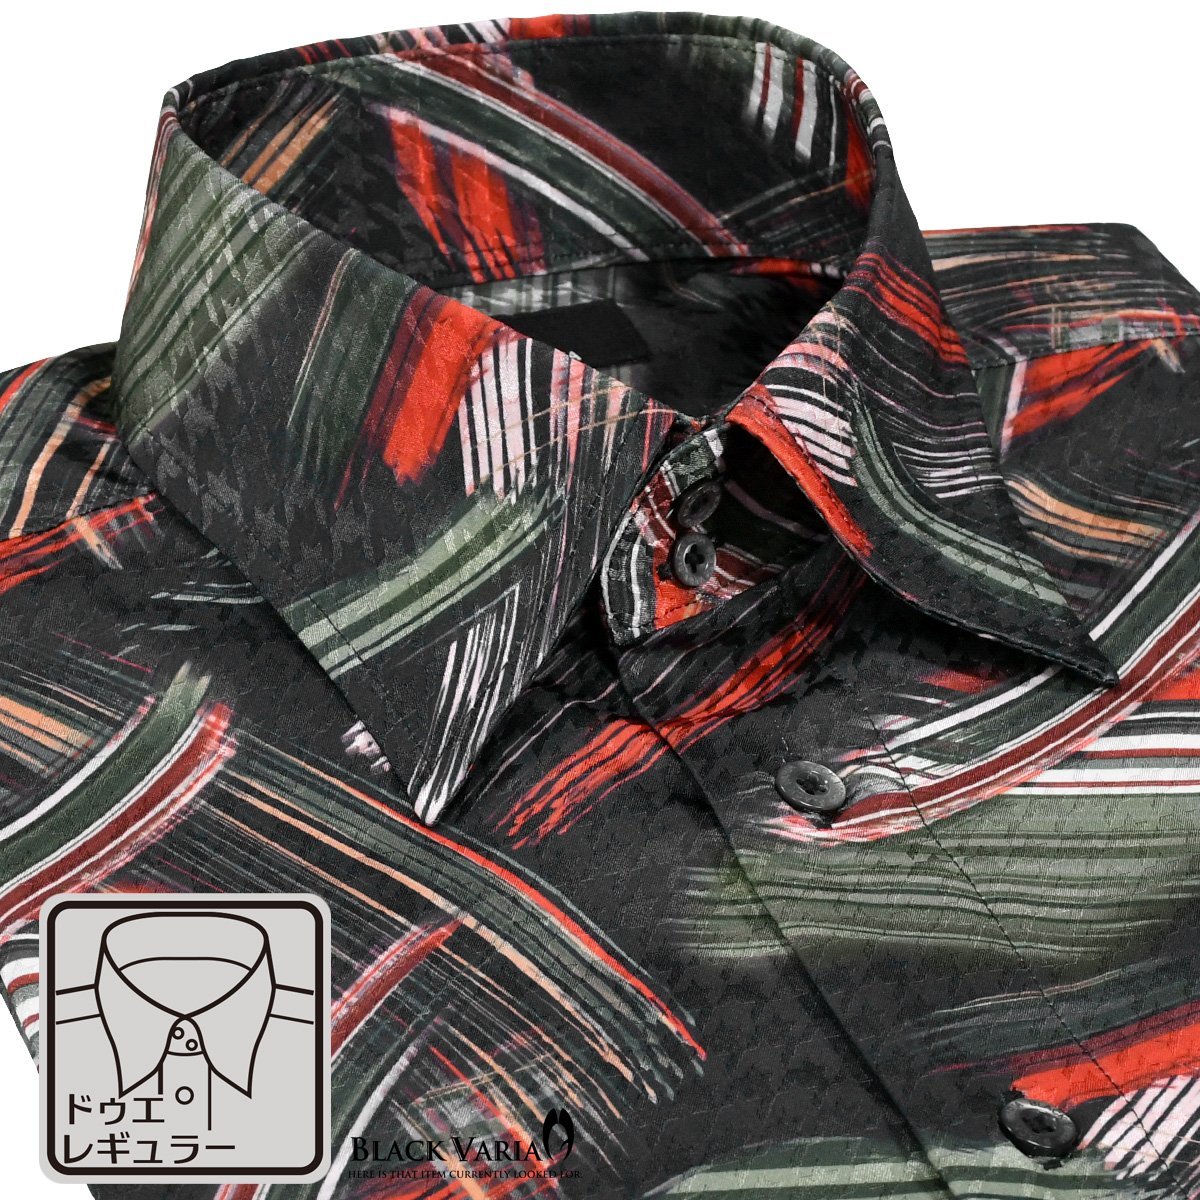 a221252-bk BLACK VARIA ドゥエボットーニ 幾何学 筆模様 レギュラーカラー 千鳥ジャガード ドレスシャツ メンズ(ブラック黒グリーン緑) L